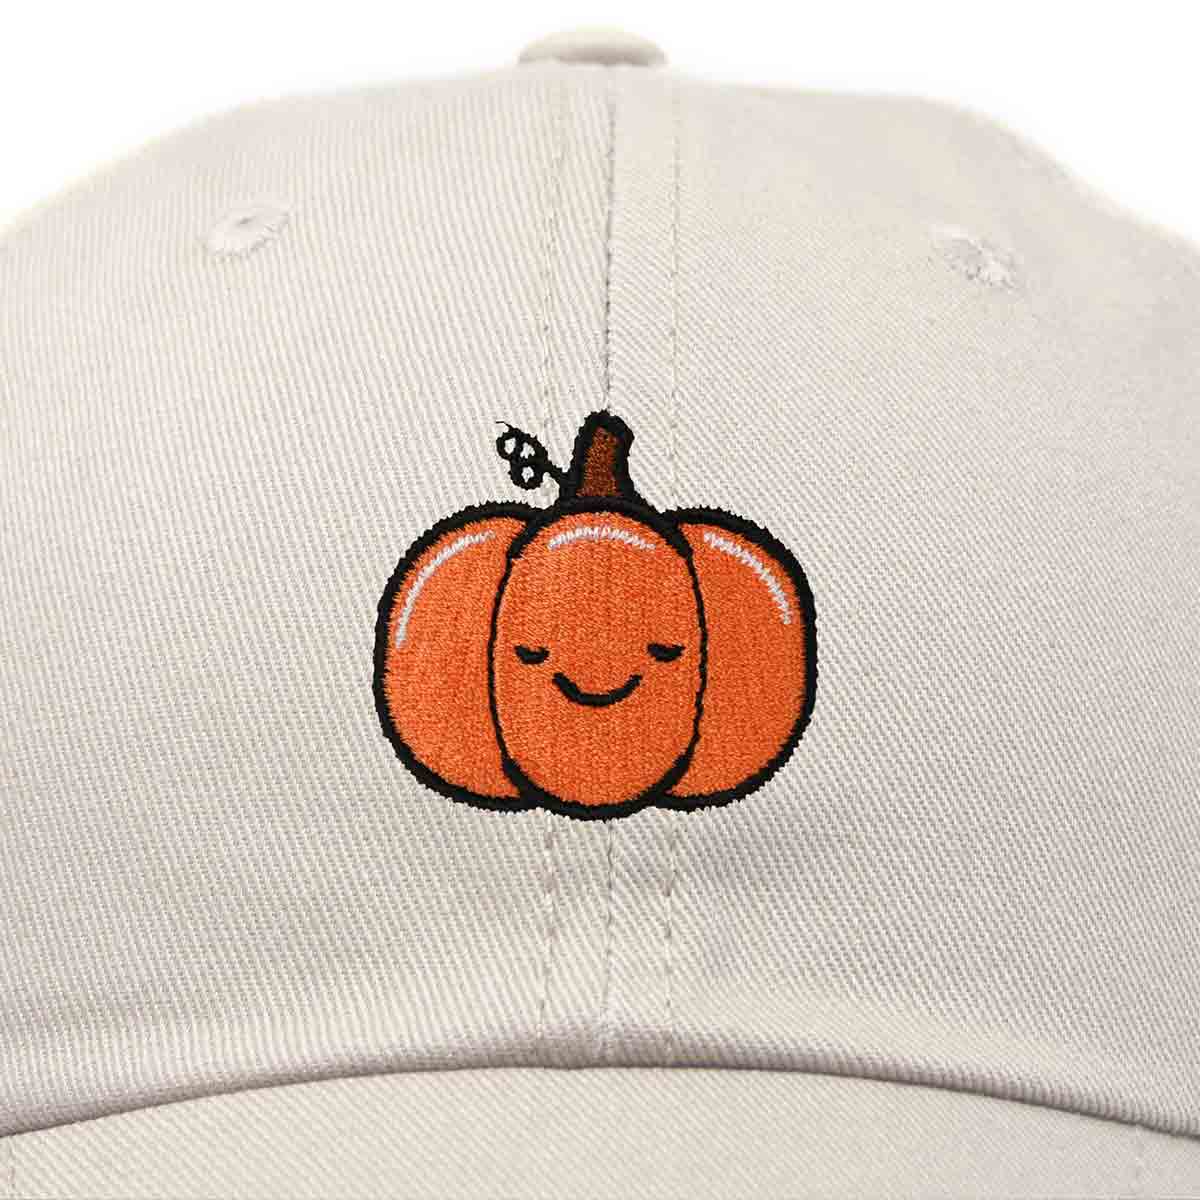 Dalix Baby Pumpkin Hat